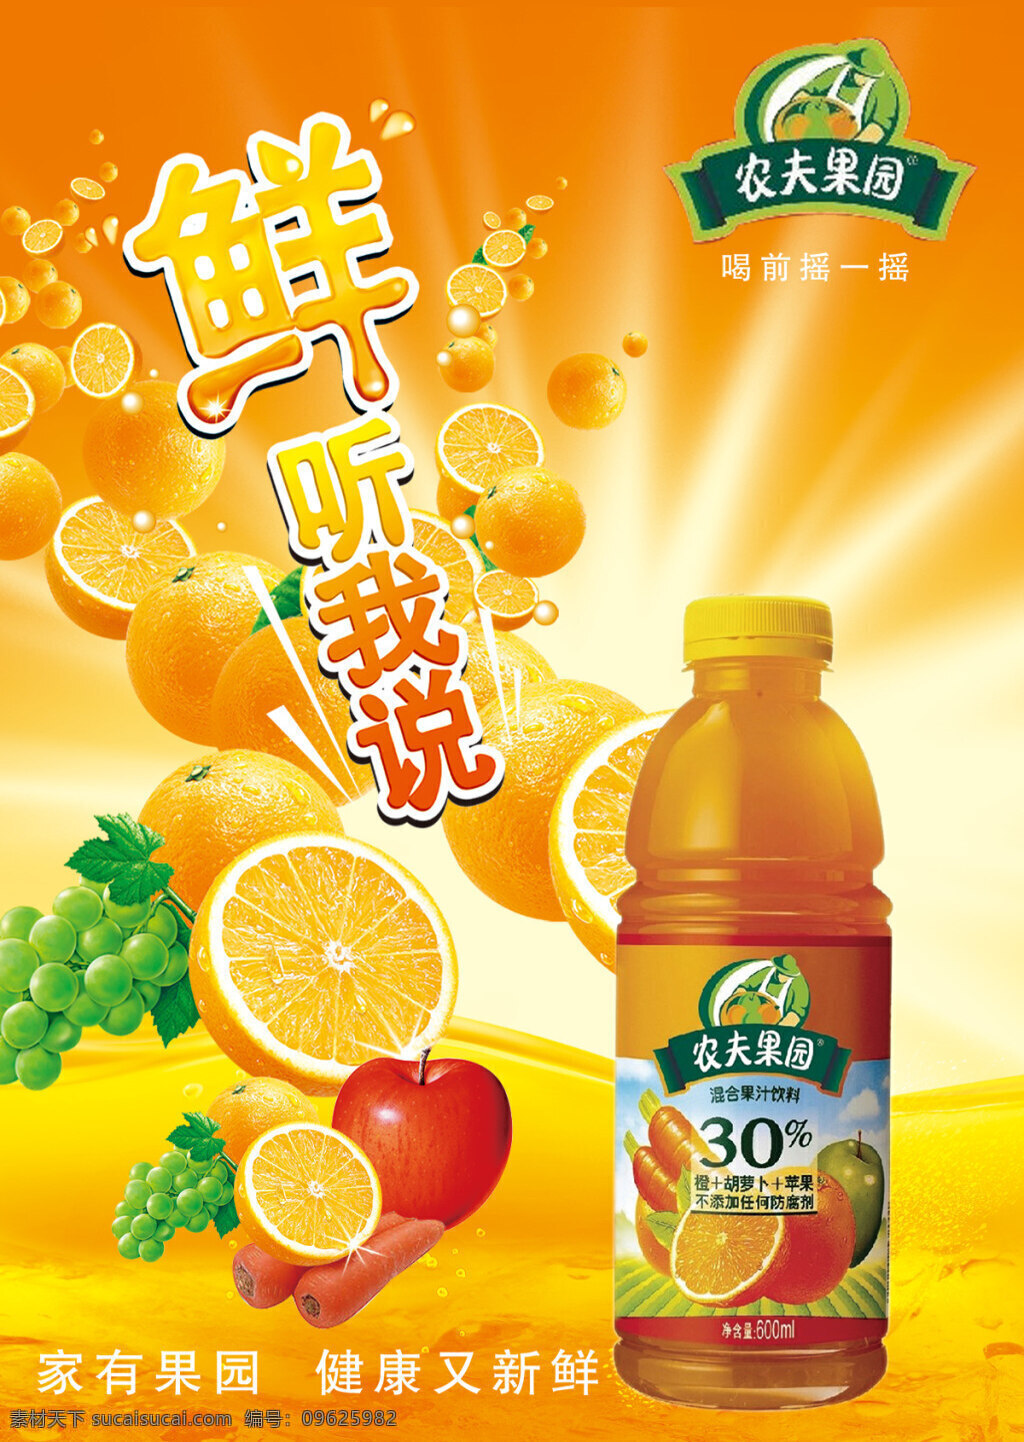 混合 果汁饮料 海报 饮料海报 活动海报 农夫果园 饮料广告设计 果汁饮料海报 平面设计 平面广告 海报素材 psd素材 橙子 果汁 水果 橙色